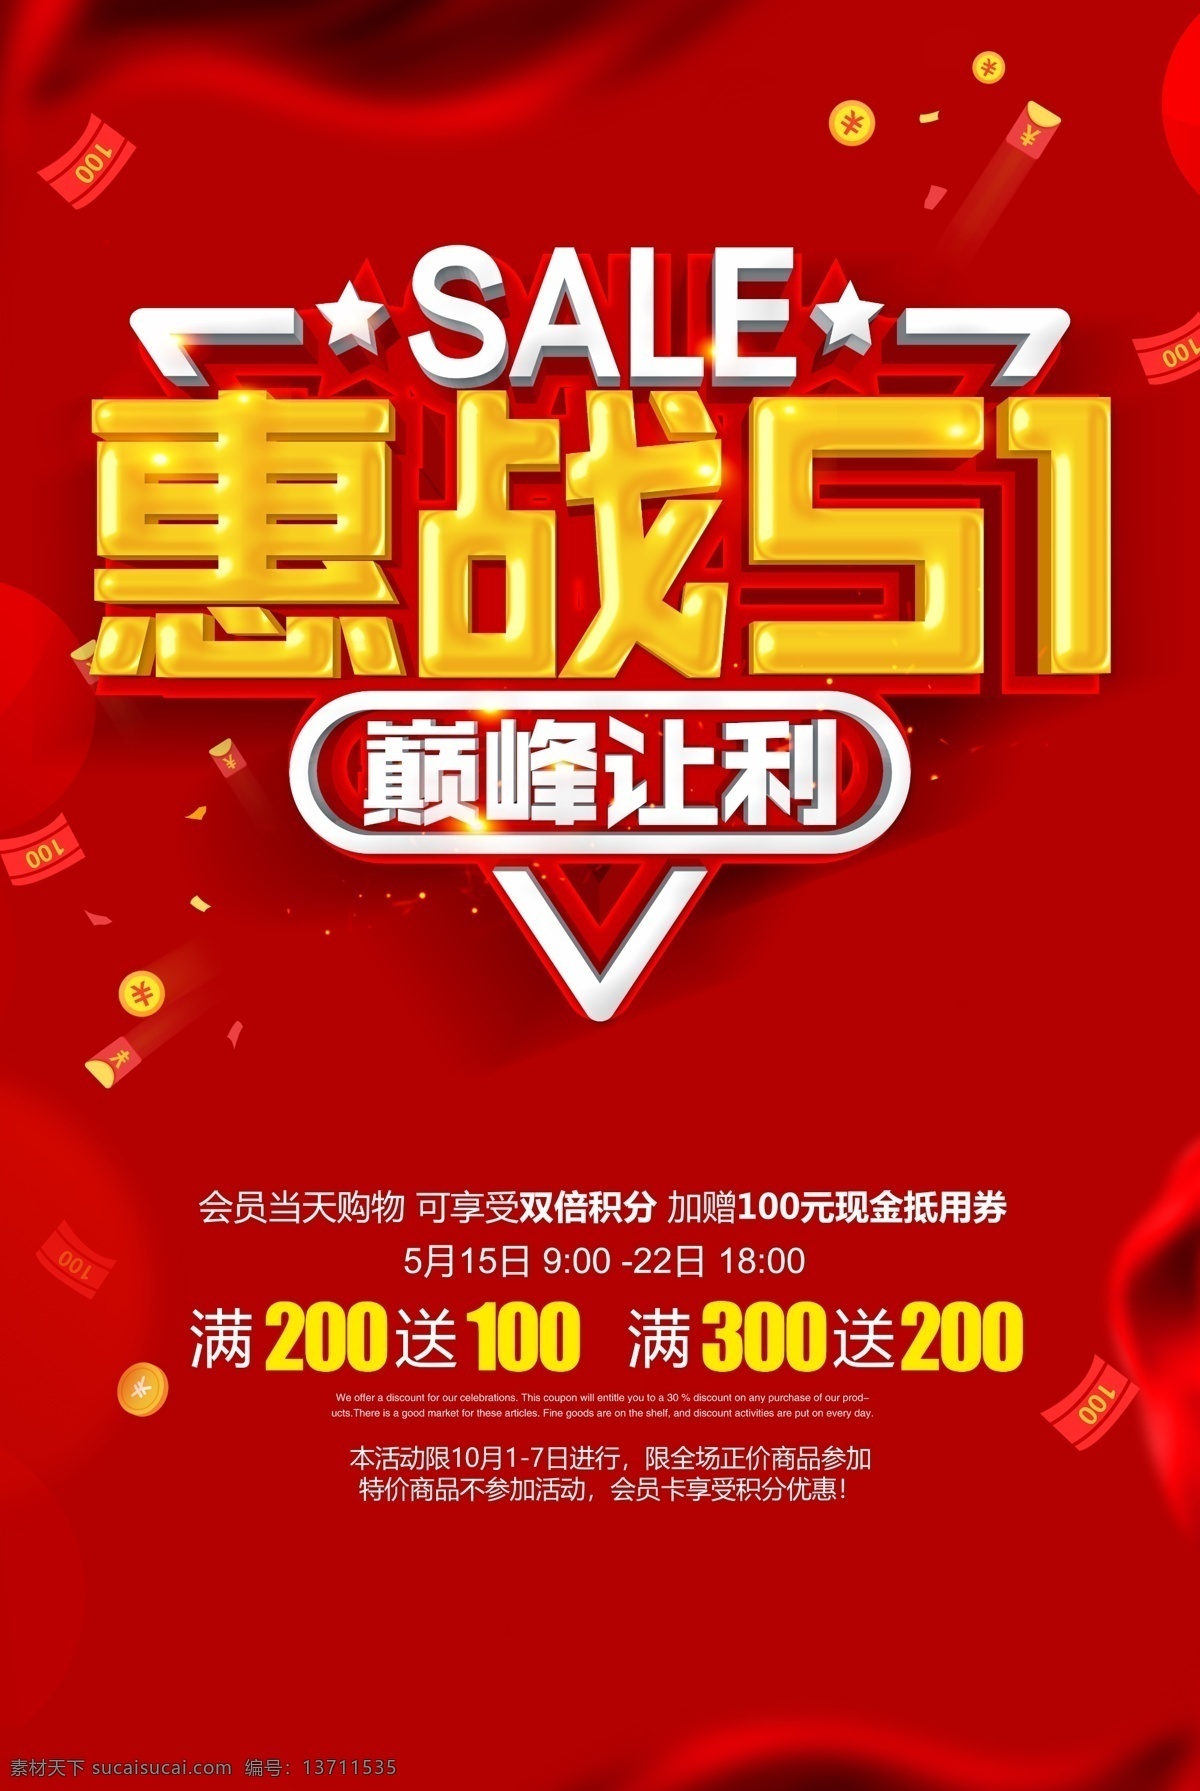 惠 战 五 促销 海报 优惠 五一 活动 宣传 广告 让利 巅峰 红旗 商家 价格